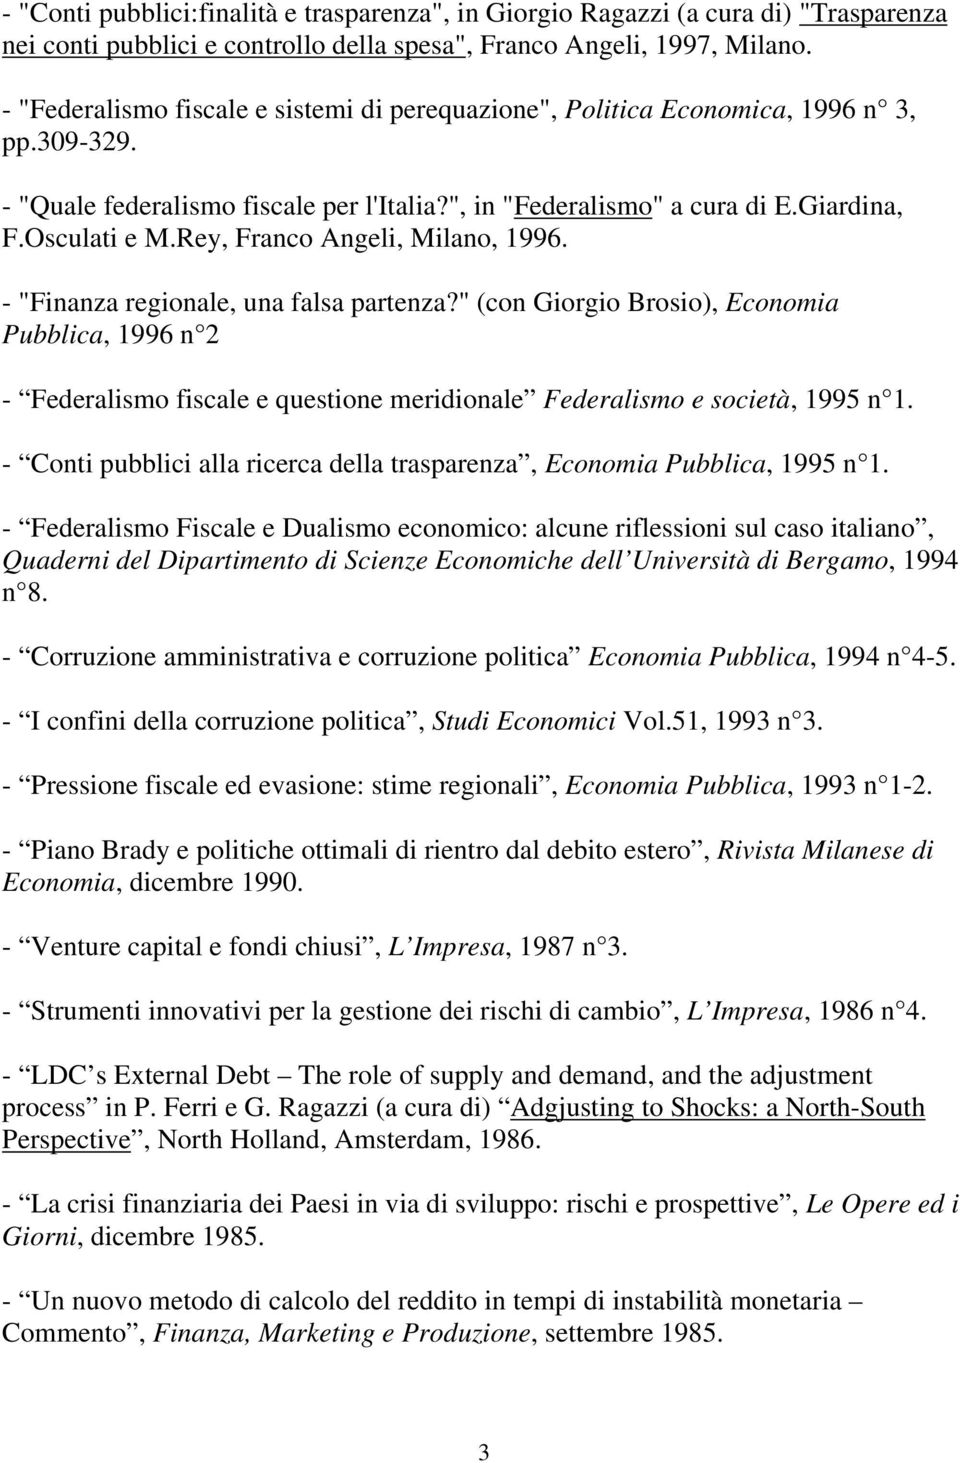 Rey, Franco Angeli, Milano, 1996. - "Finanza regionale, una falsa partenza?